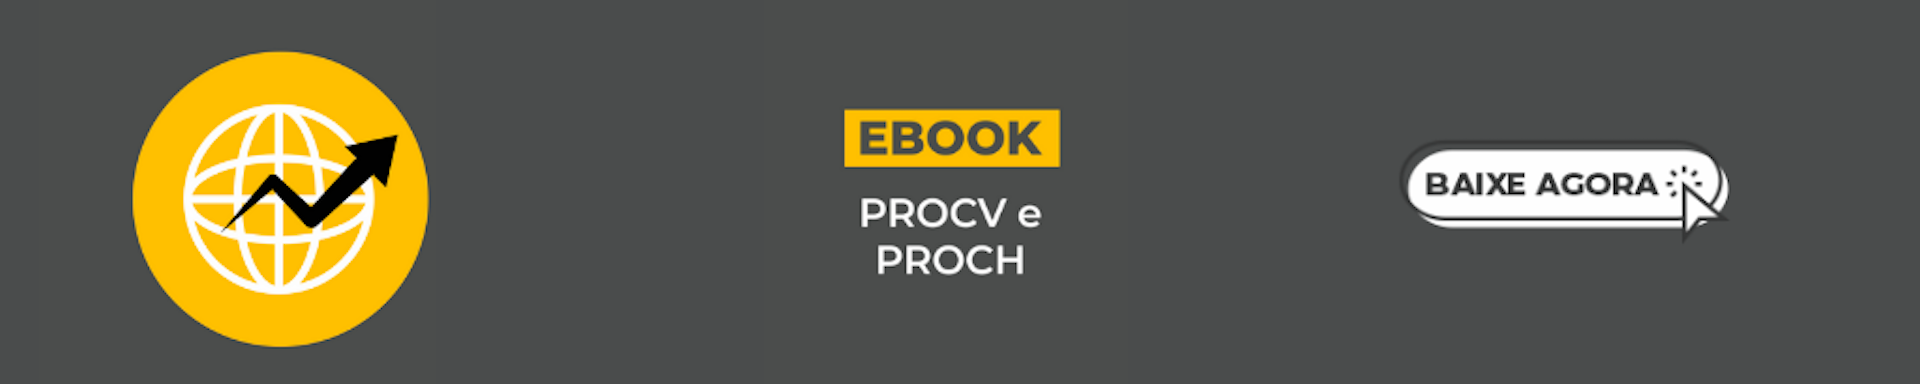 E-book PROCV e PROCH